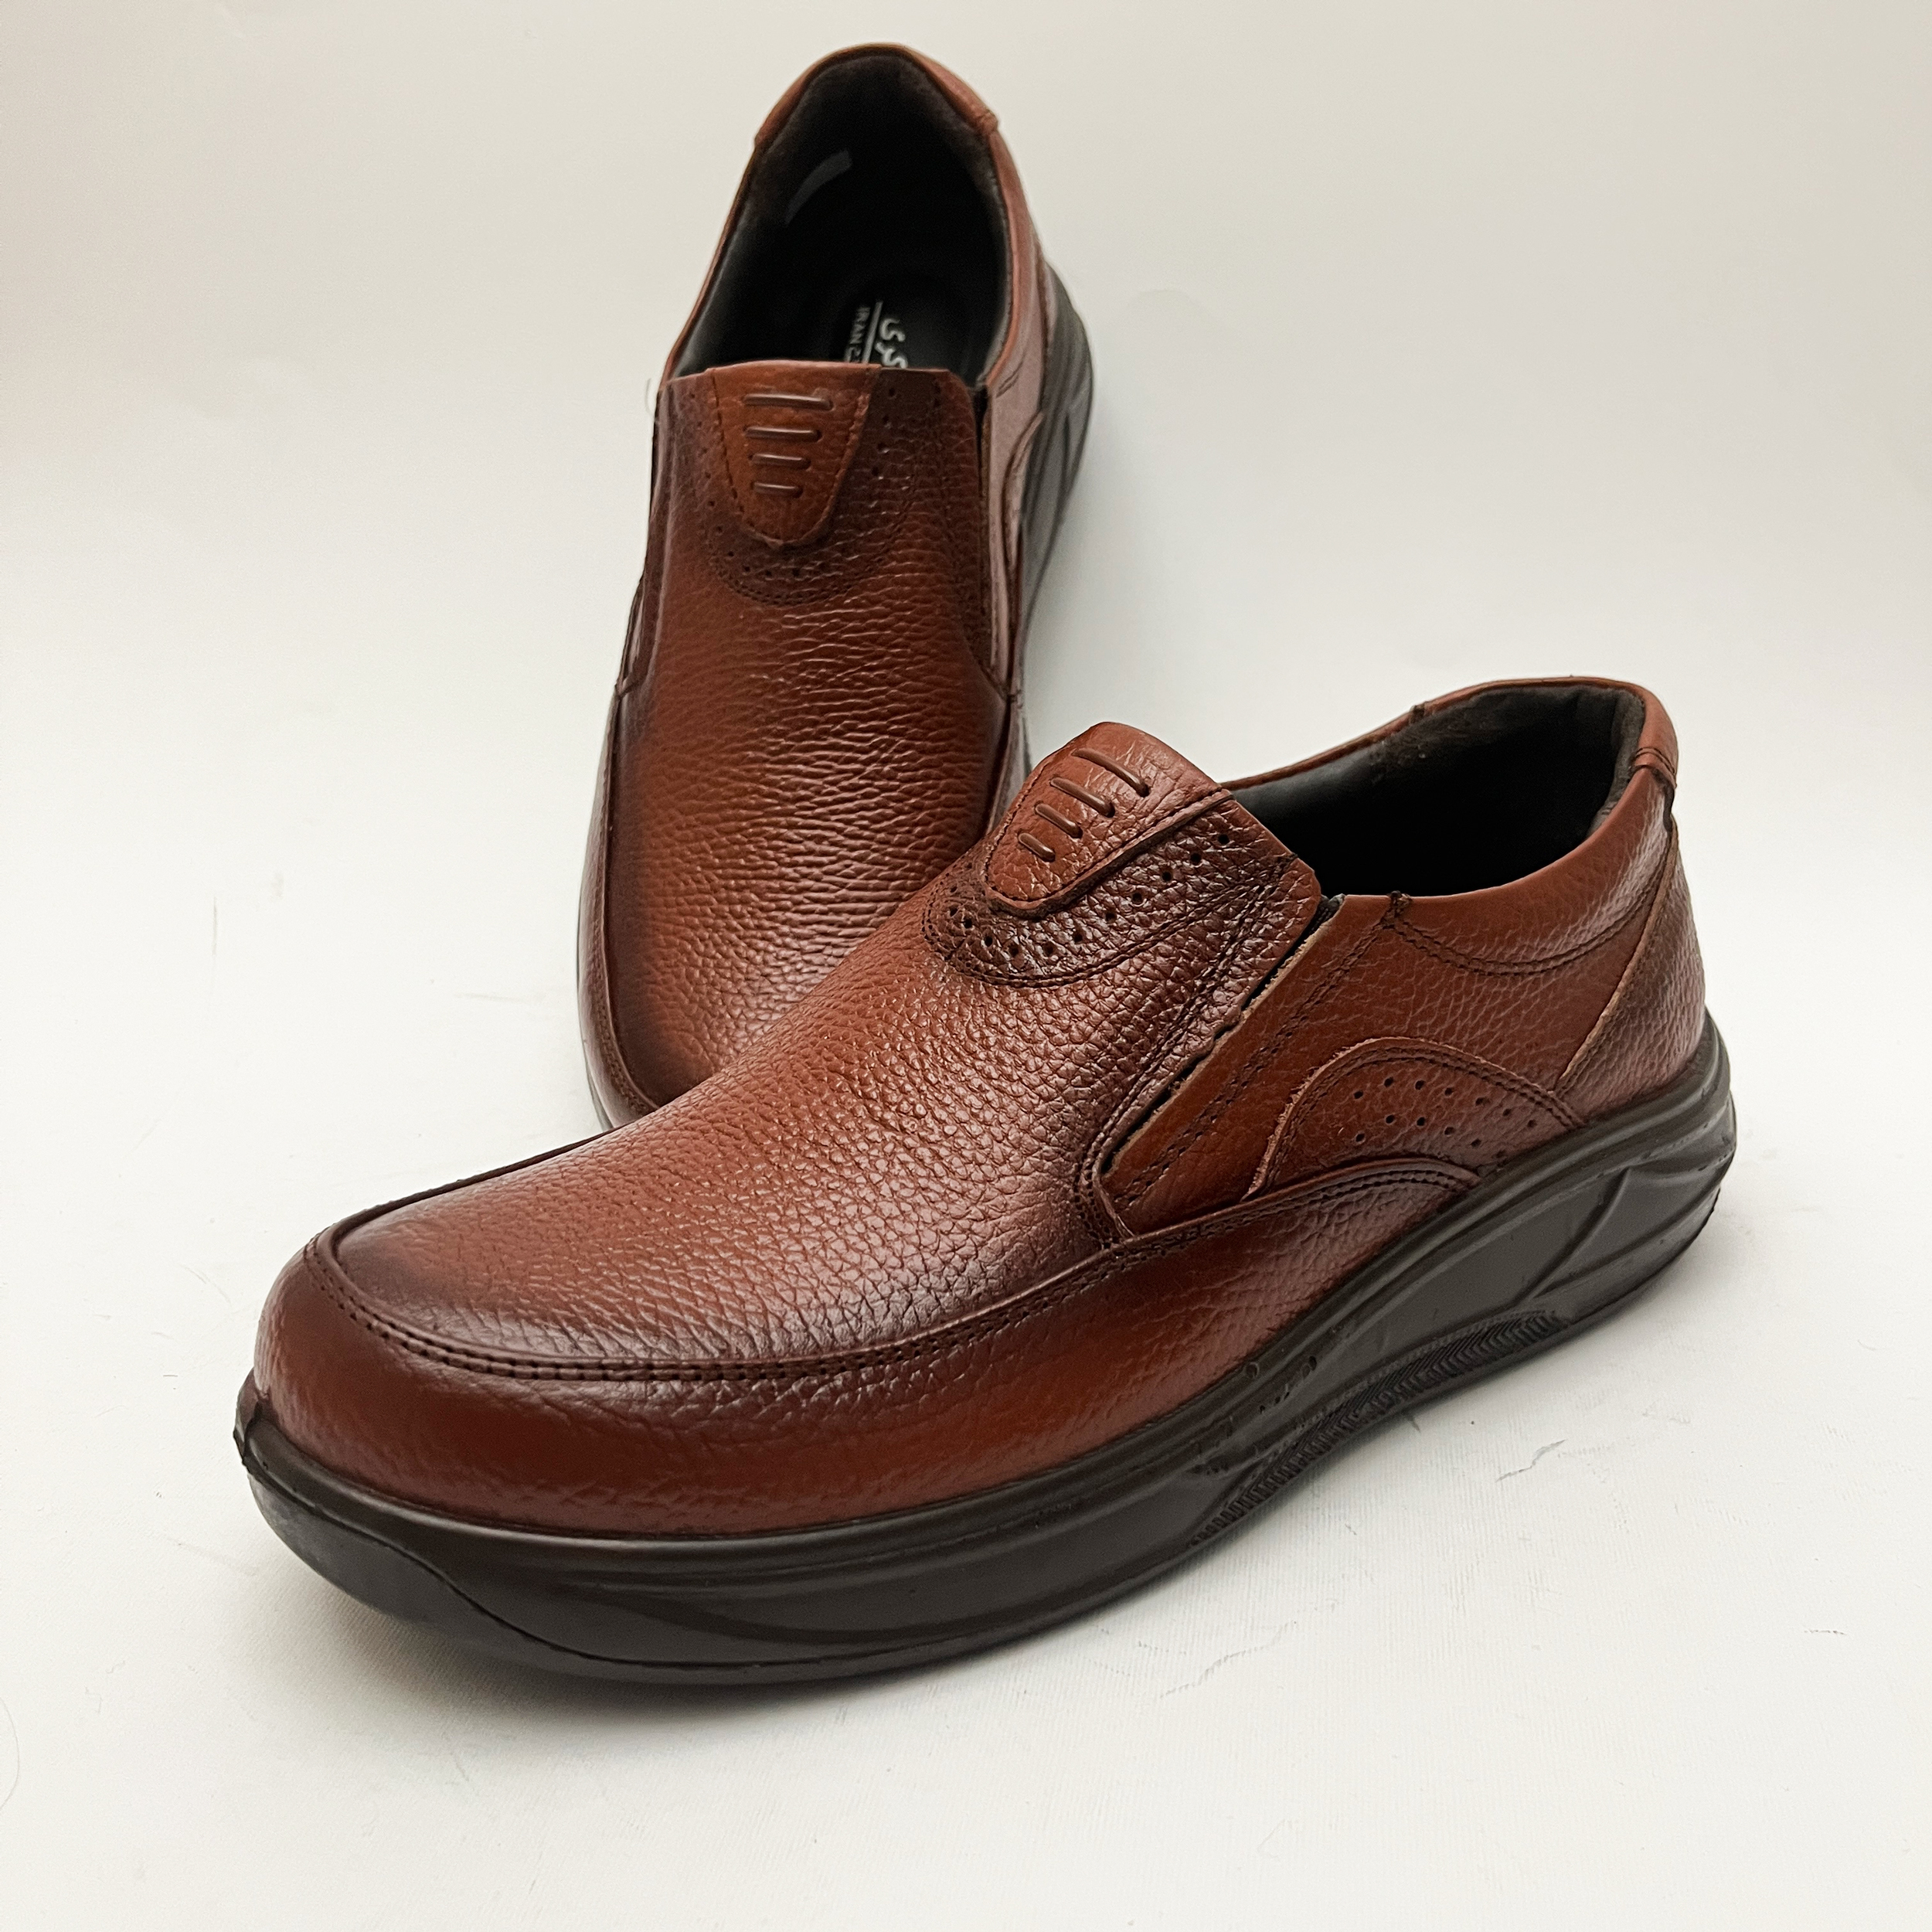 کفش طبی مردانه مدل چرمینه کد 4058 -  - 2